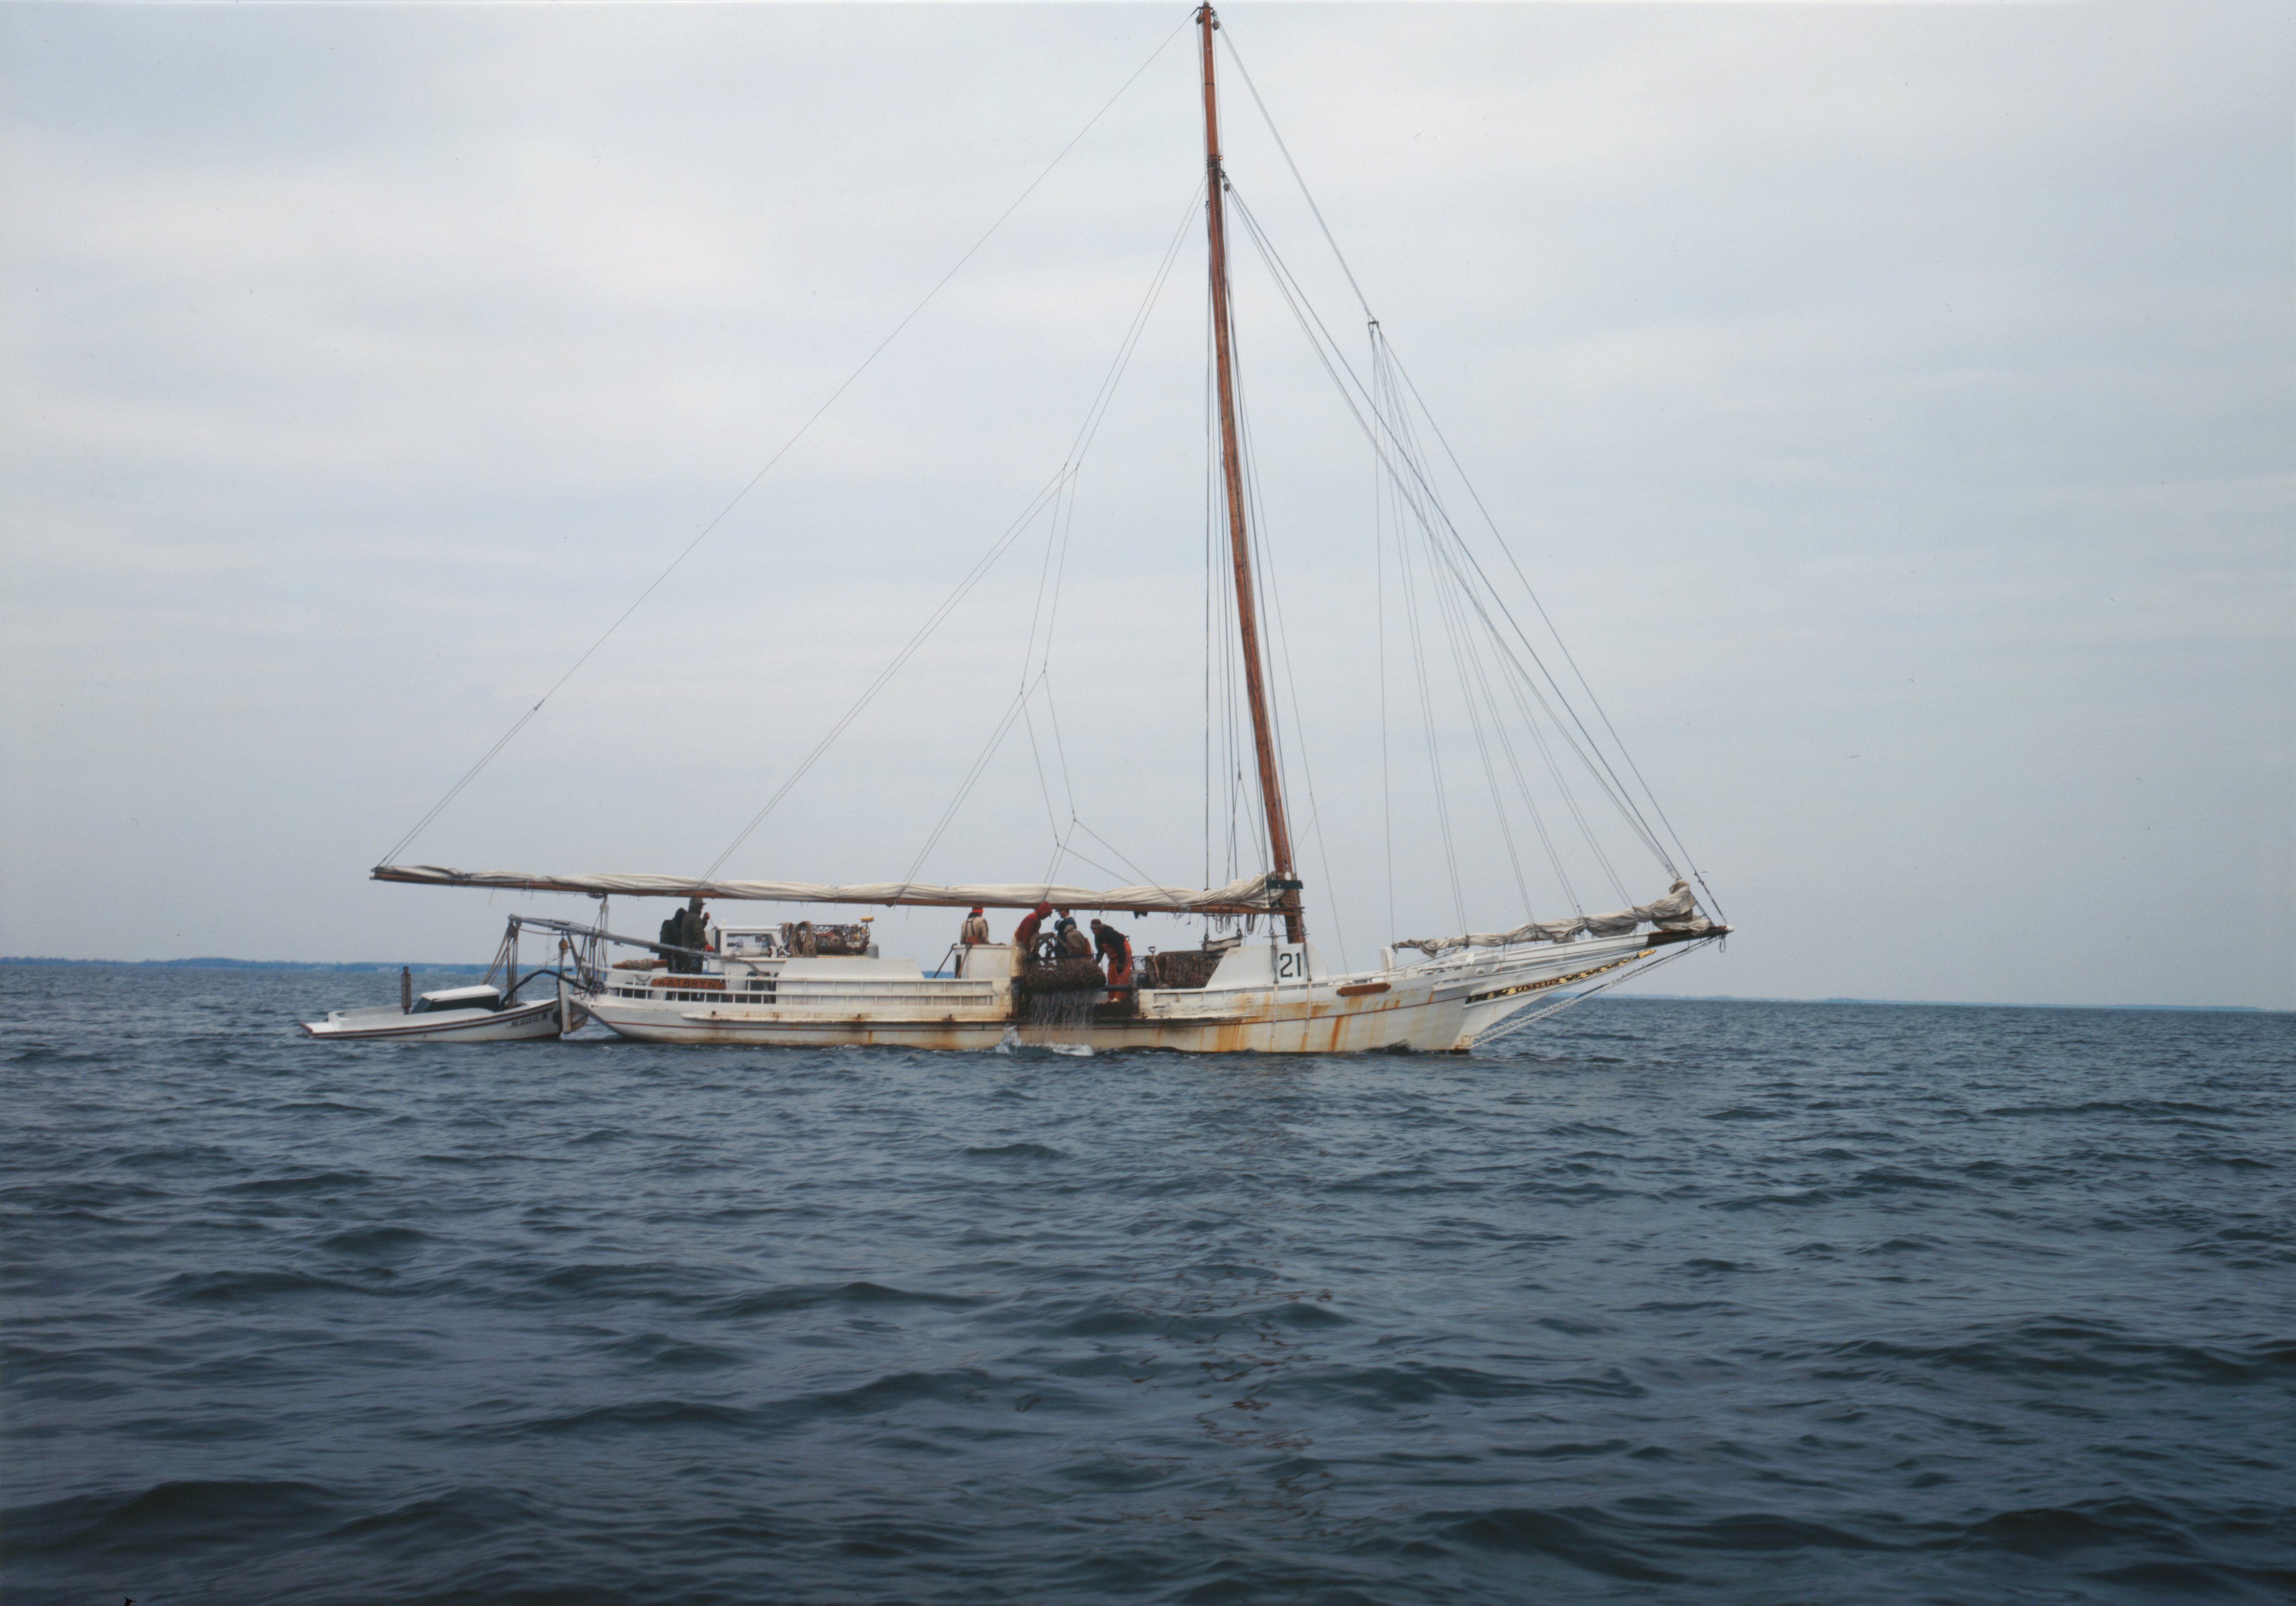 Skipjacks on the Chesapeake